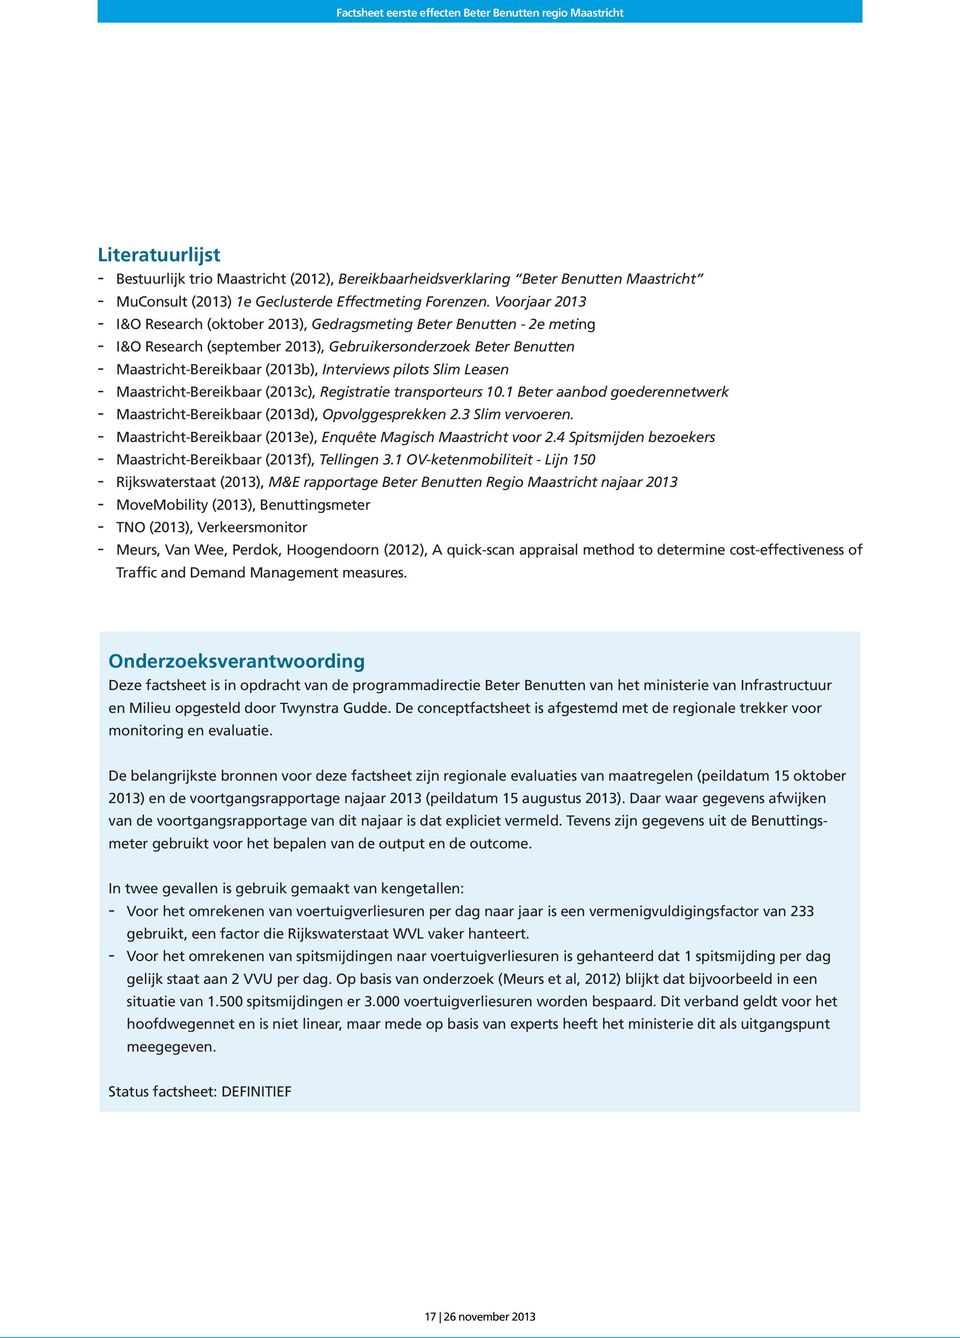 Slim Leasen MaastrichtBereikbaar (2013c), Registratie transporteurs 10.1 Beter aanbod goederennetwerk MaastrichtBereikbaar (2013d), Opvolggesprekken 2.3 Slim vervoeren.